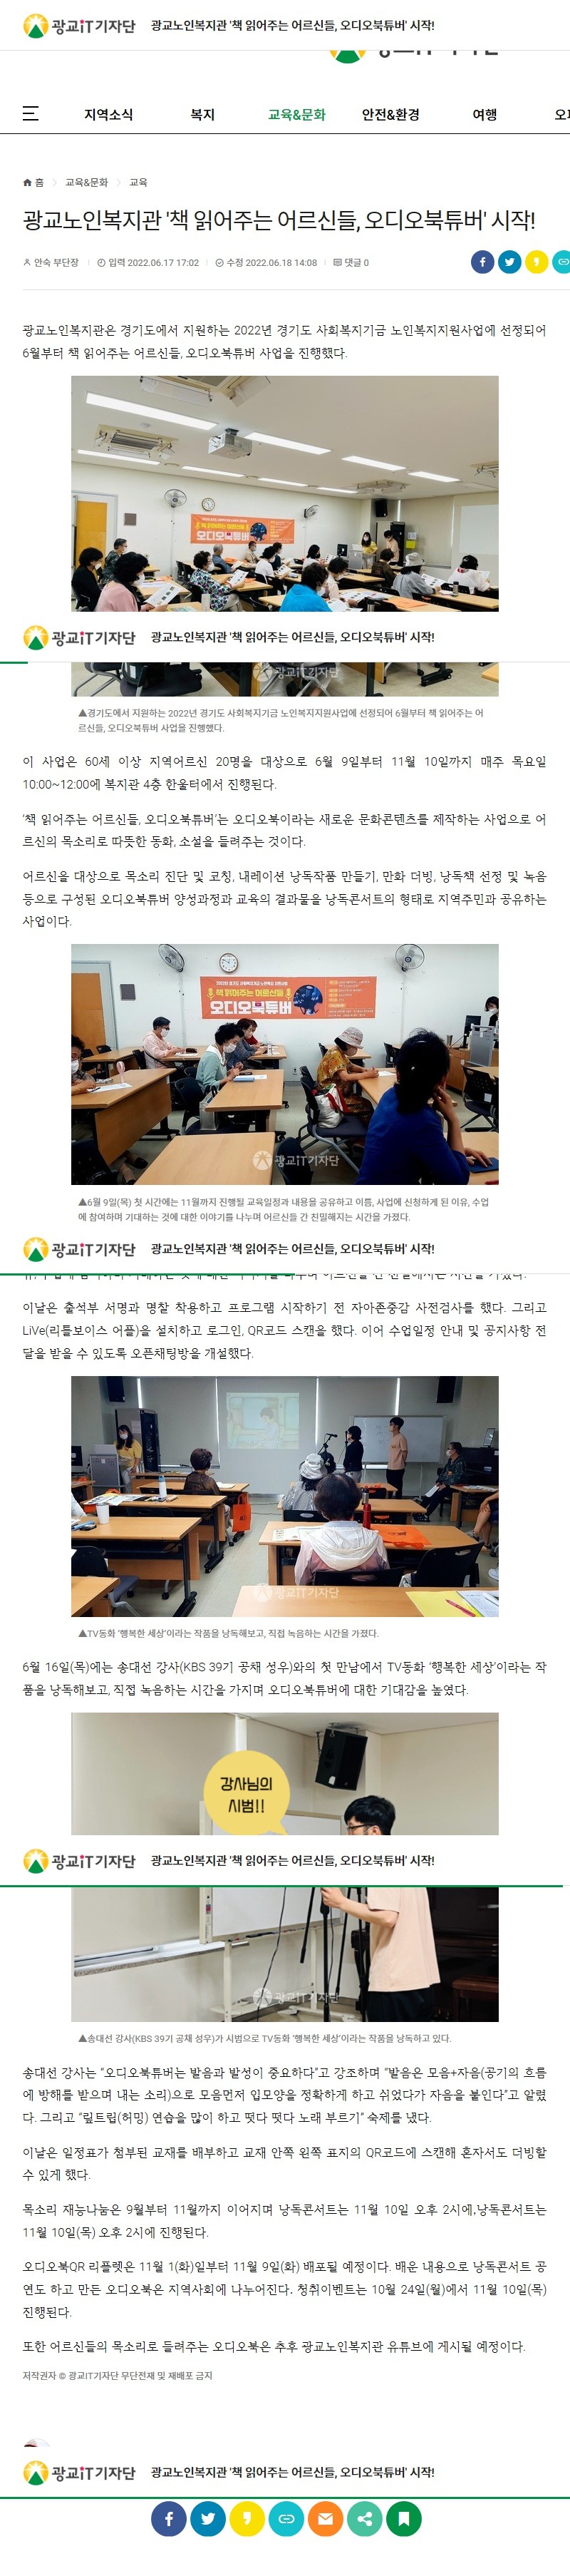 광교노인복지관 '책 읽어주는 어르신들, 오디오북튜버' 시작!.jpg